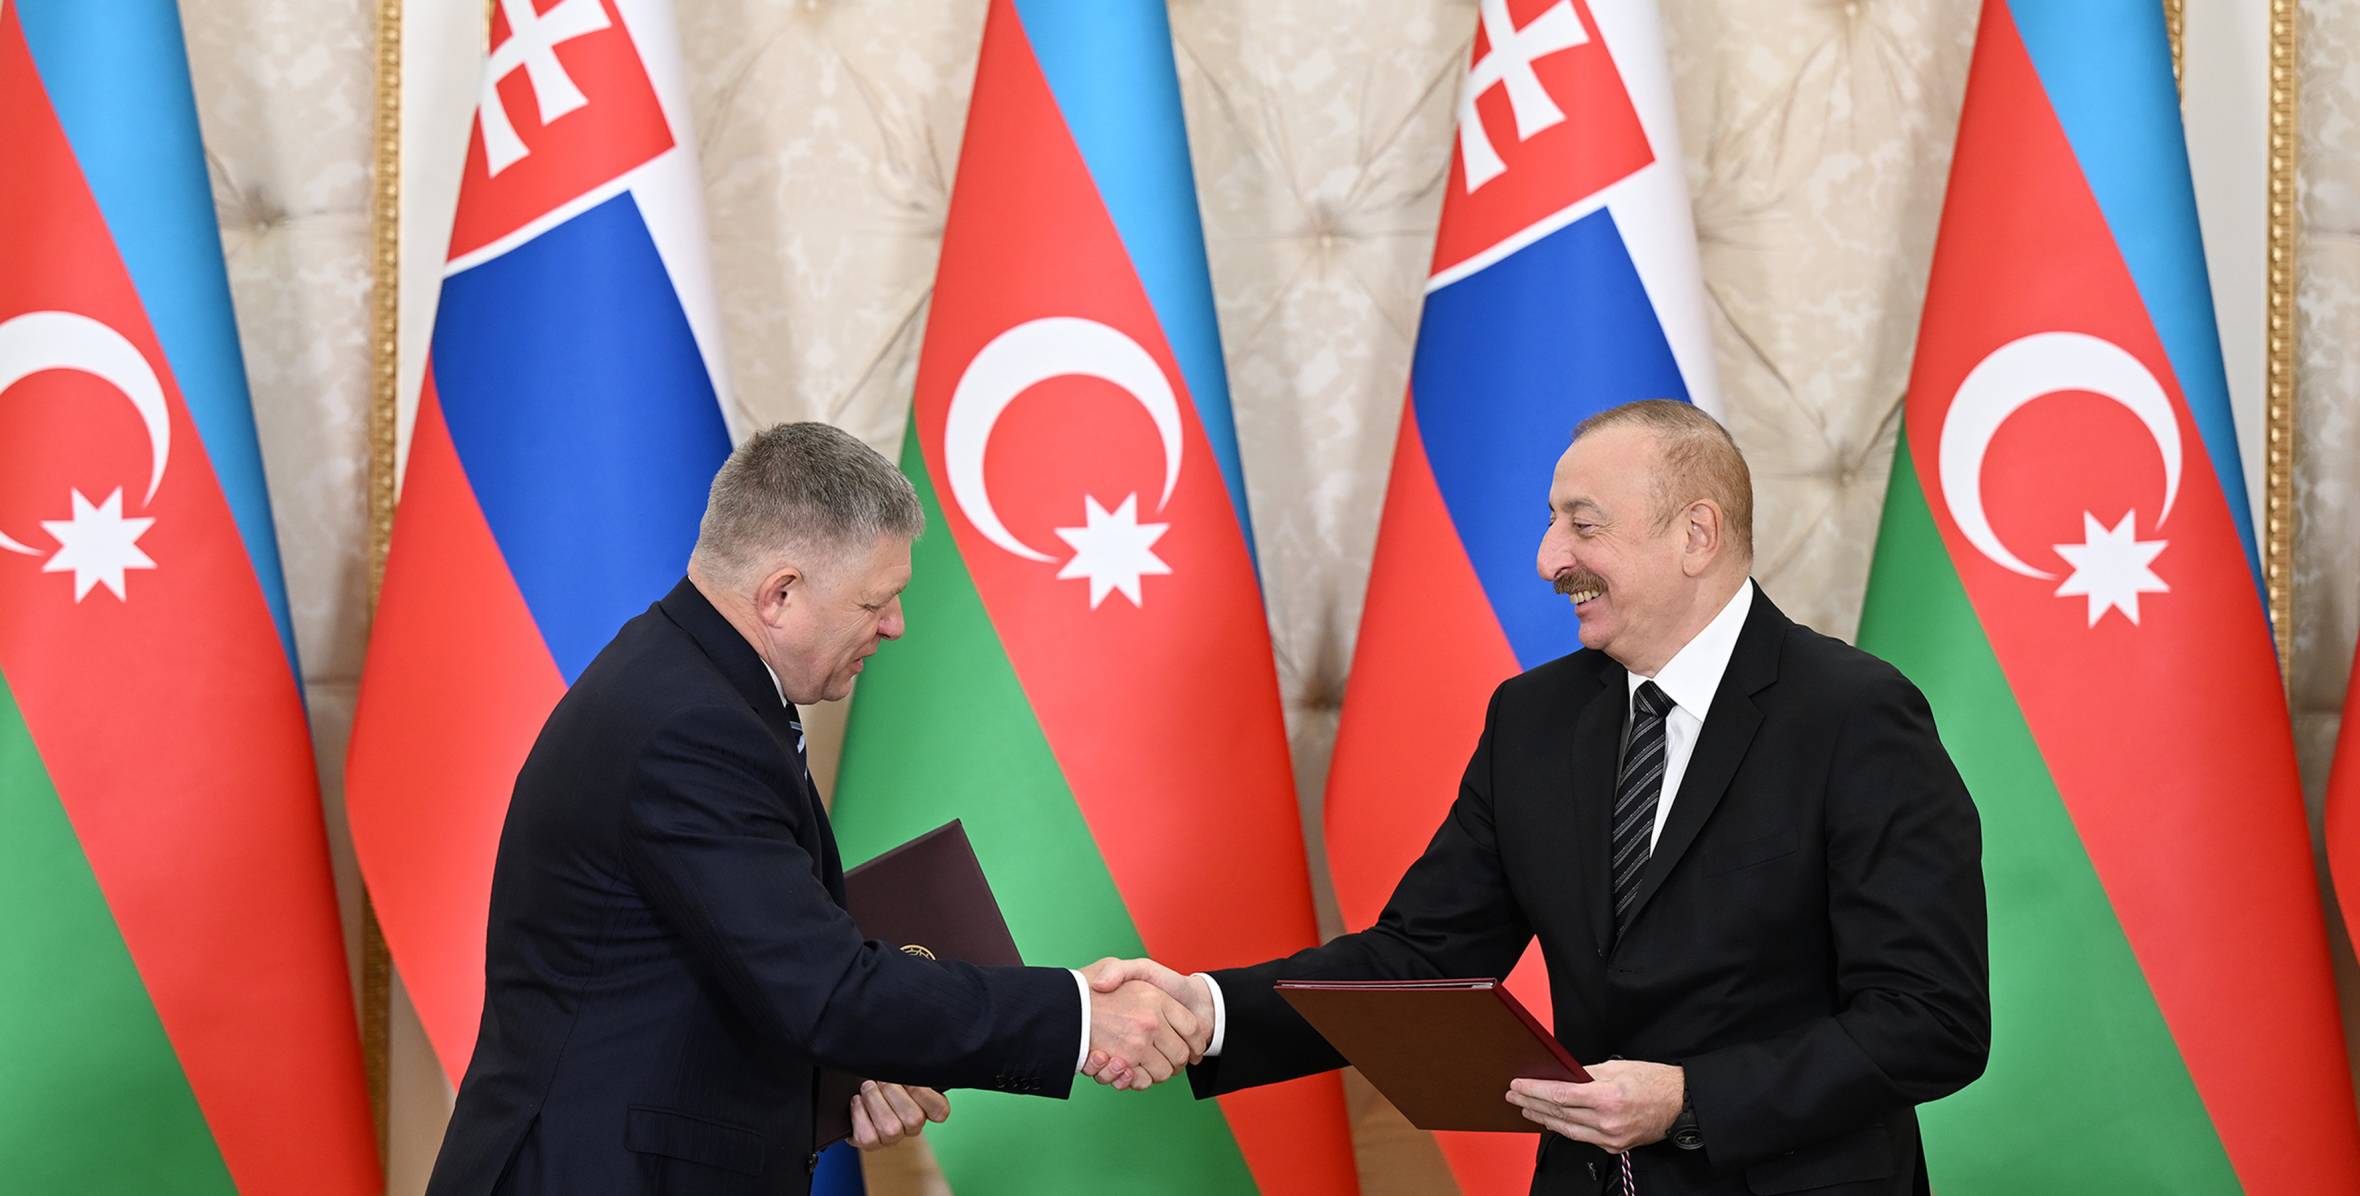 Azerbaijan and Slovakia signed documents